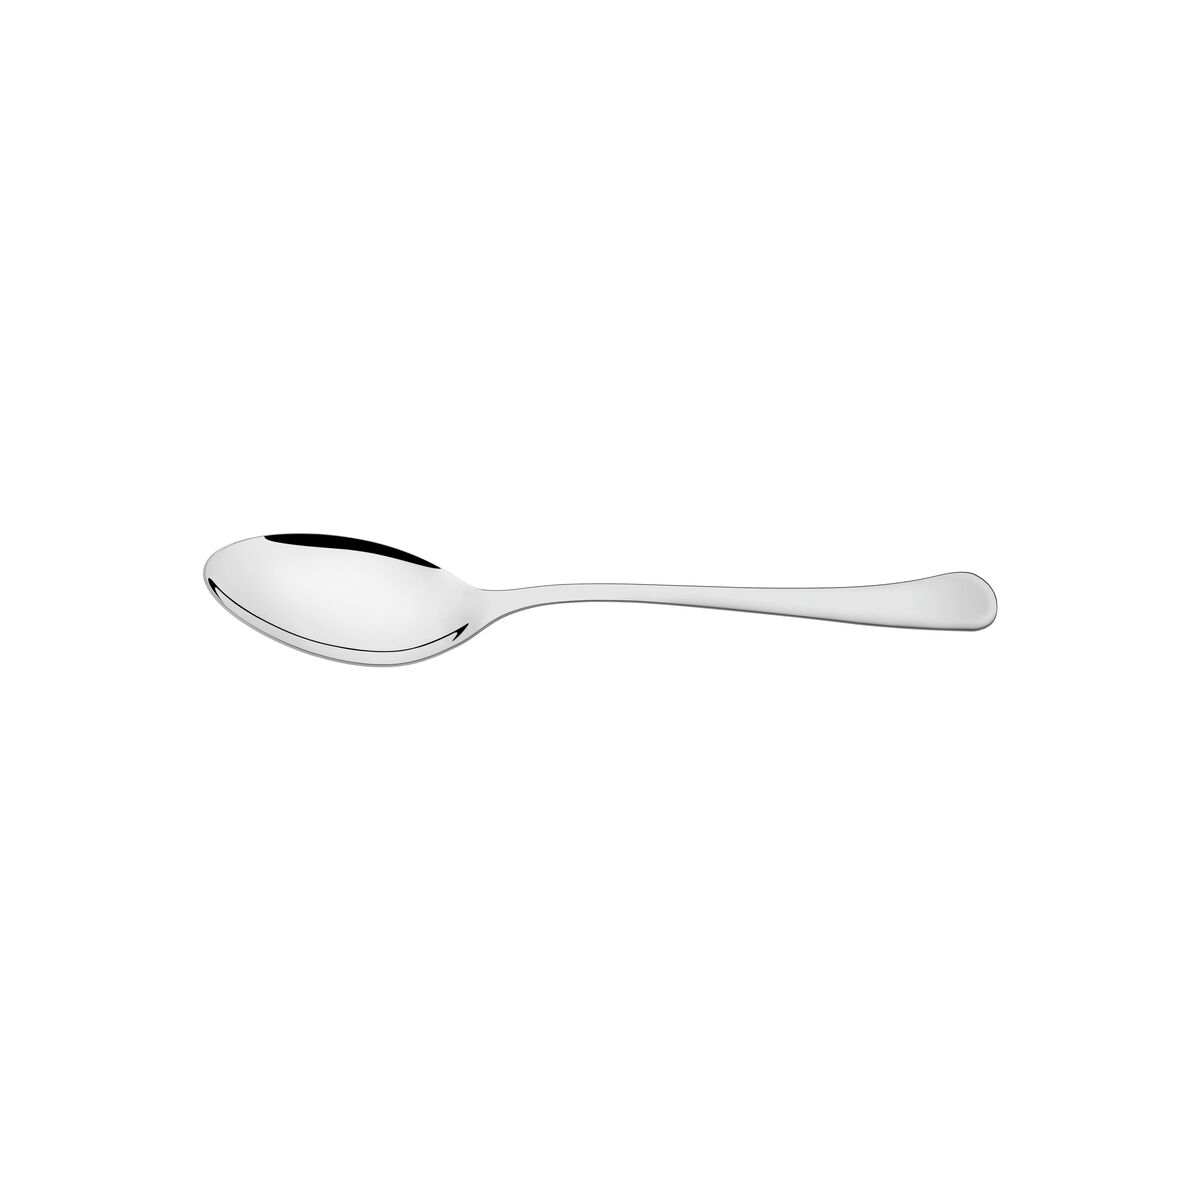 Tramontina Havana stainless steel dessert spoon